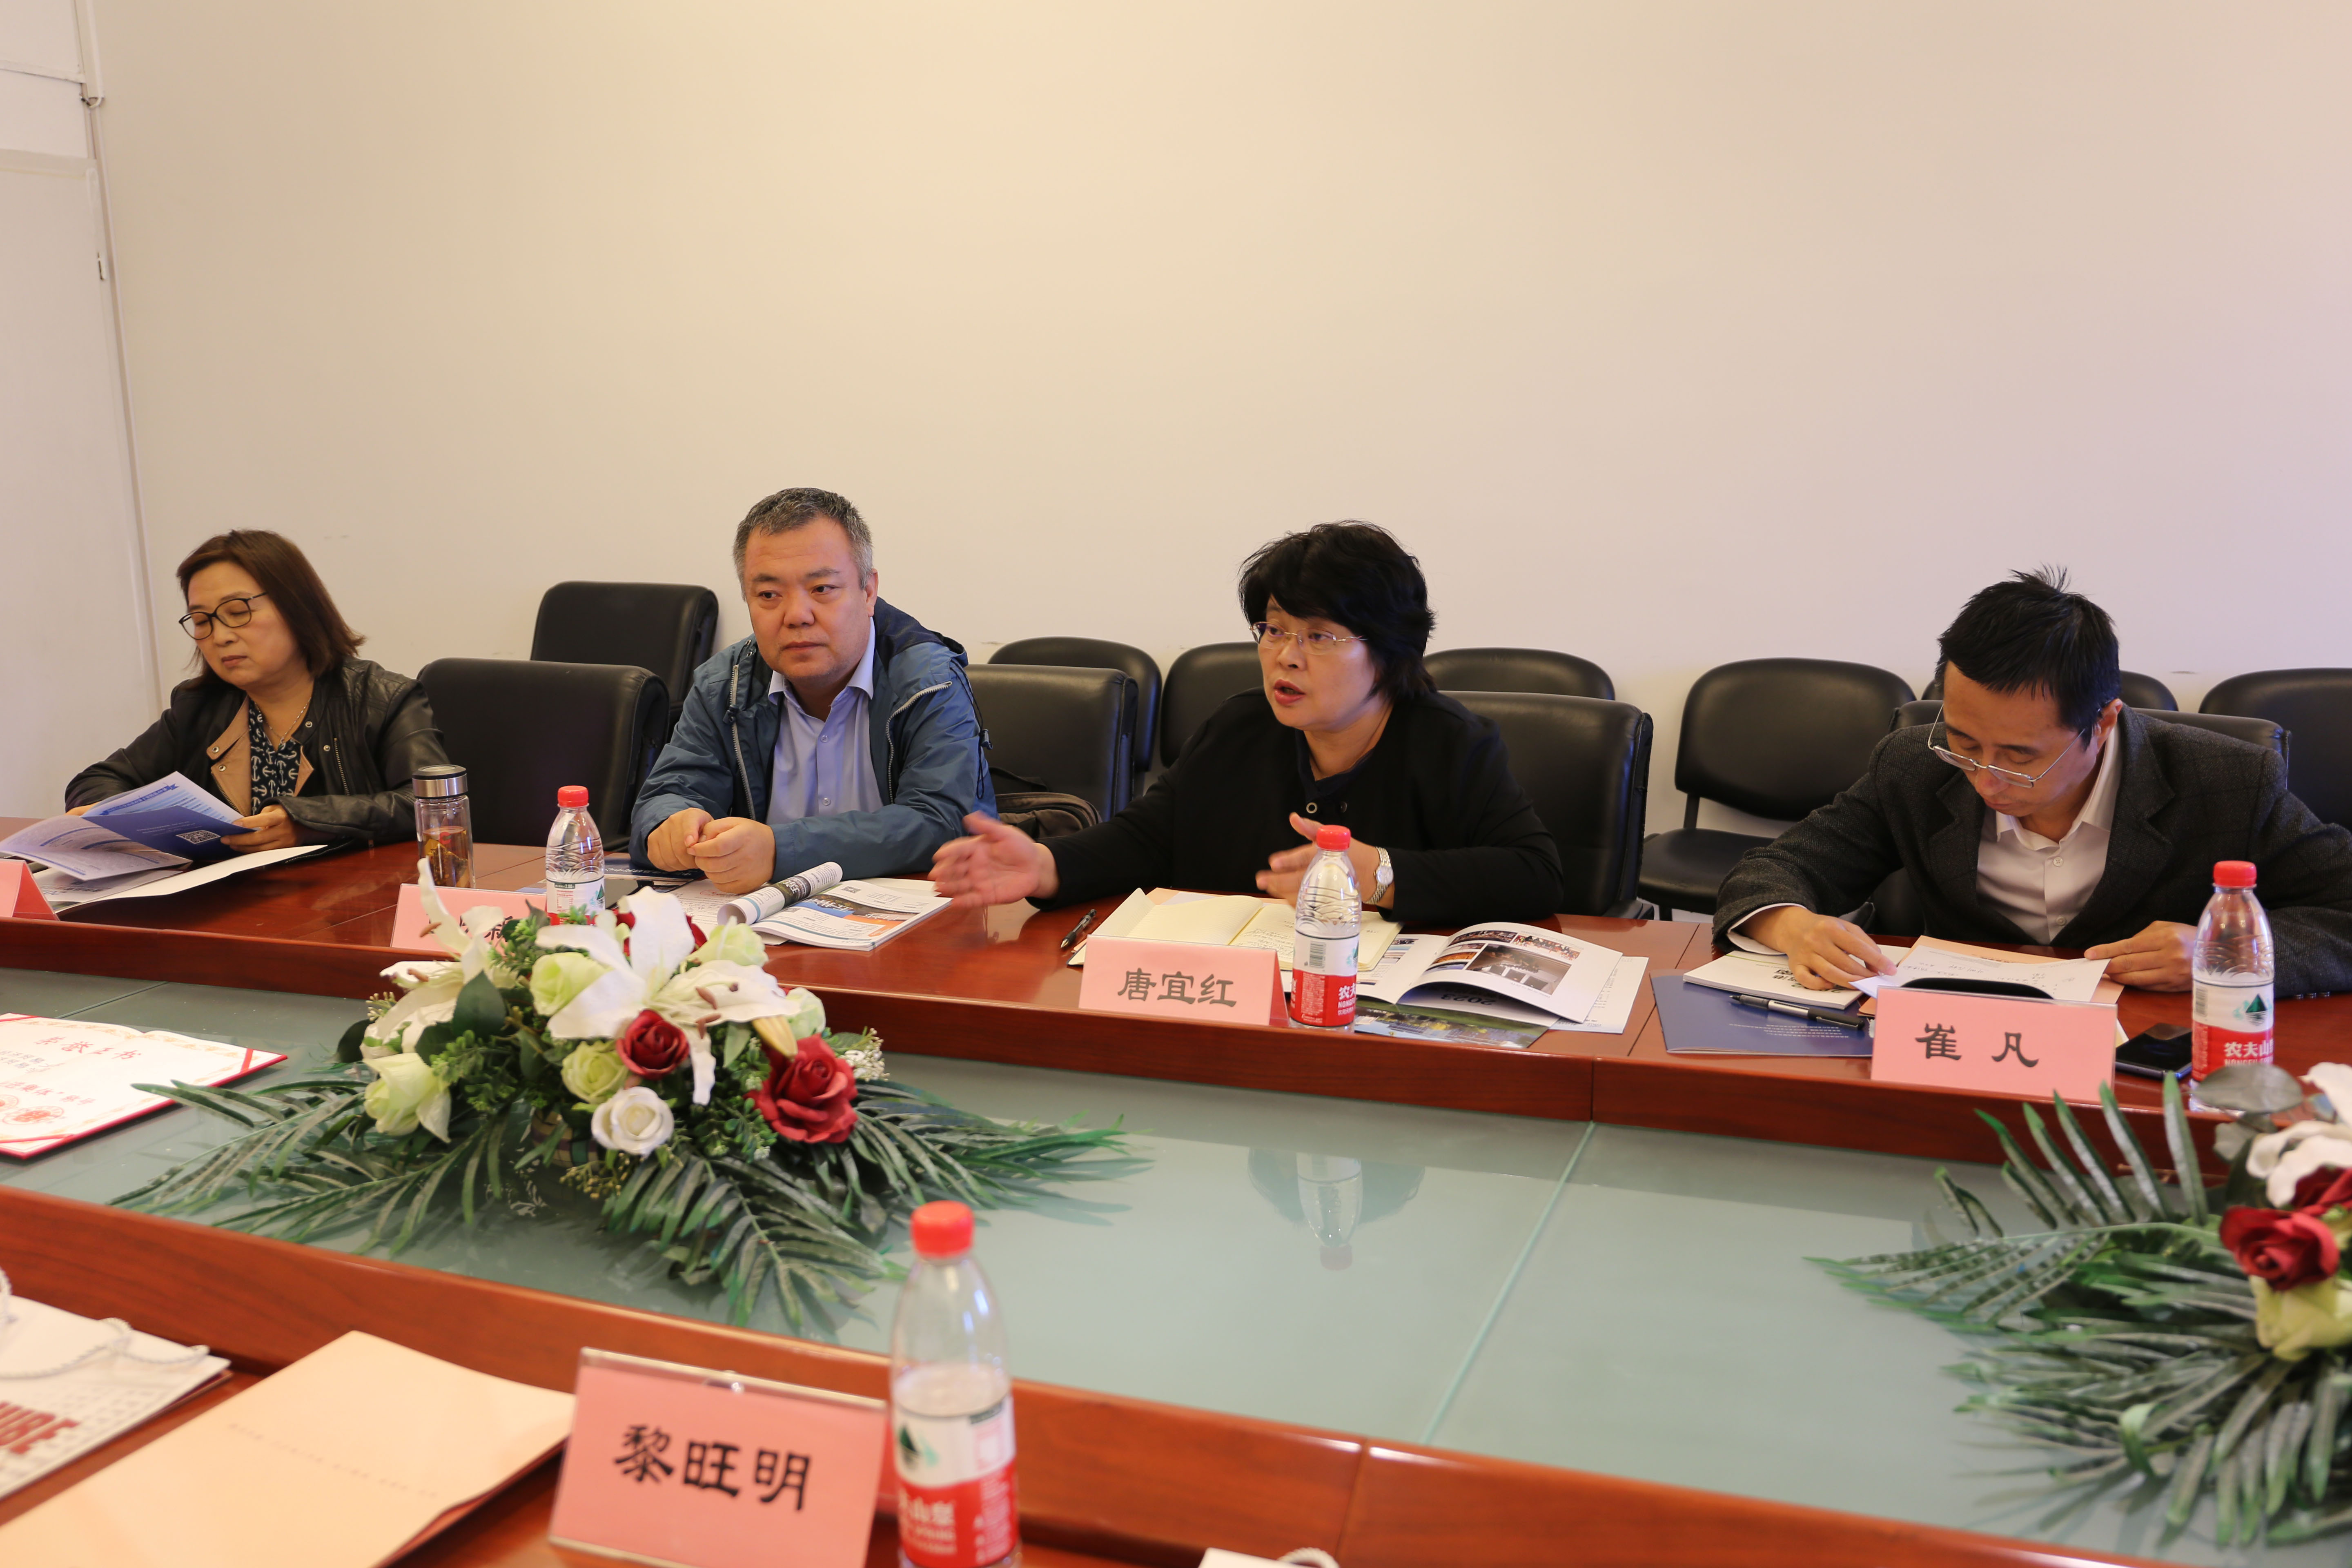 学院|海南自由贸易港北京前方工作组访问国际经济贸易学院座谈会报道